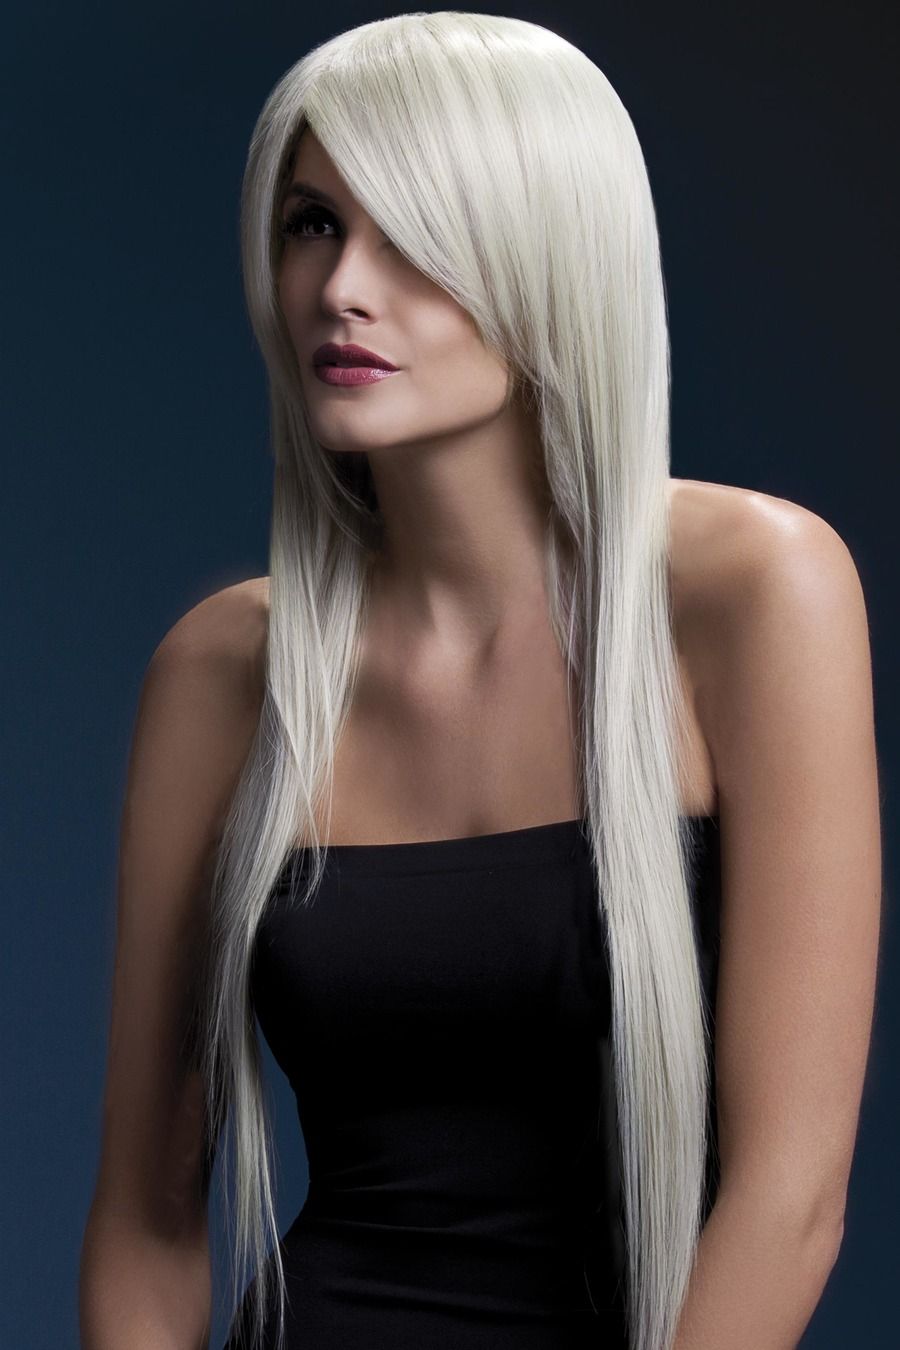 Regeneratief petticoat Uitgebreid Luxe pruik Amber met blond haar, lang stijl - Feesthuis